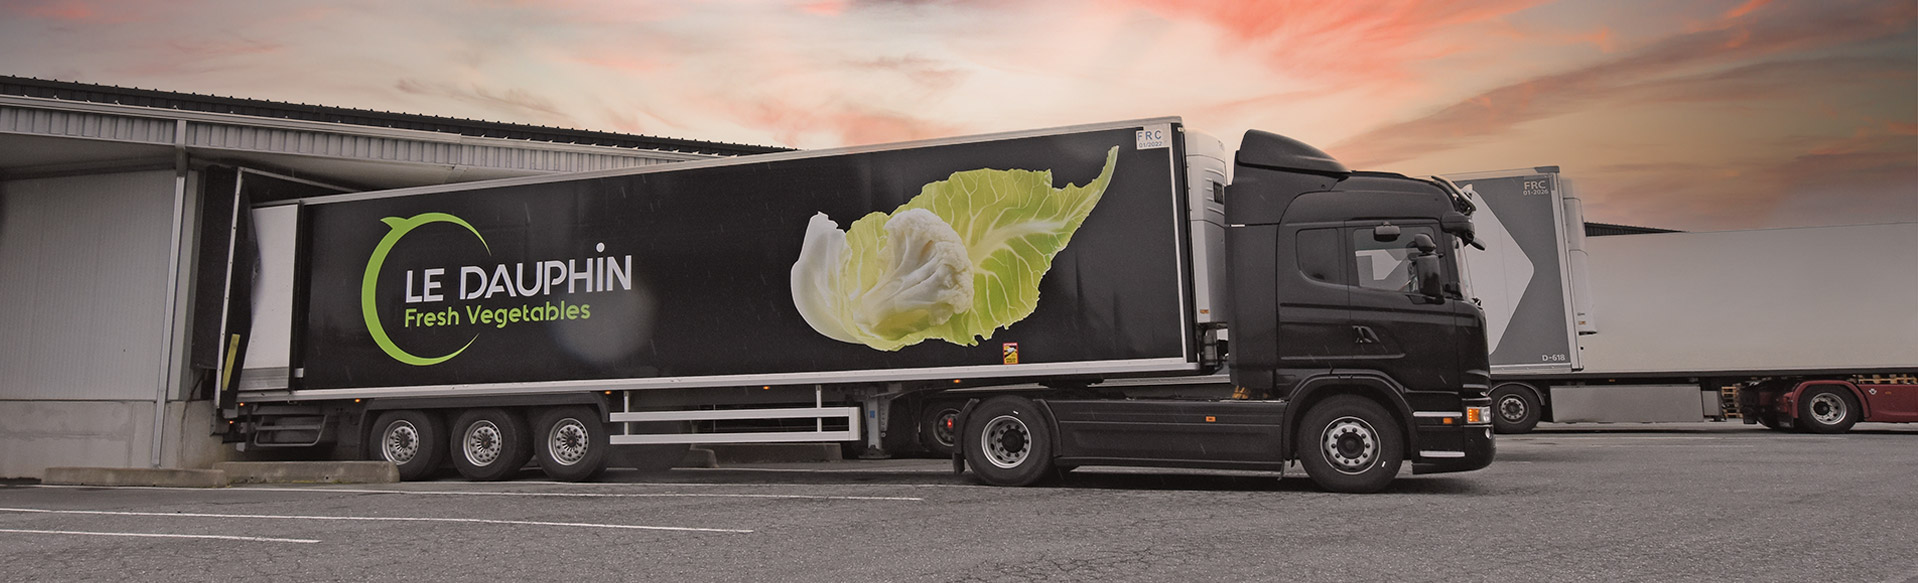 truck le dauphin vegetable exporter